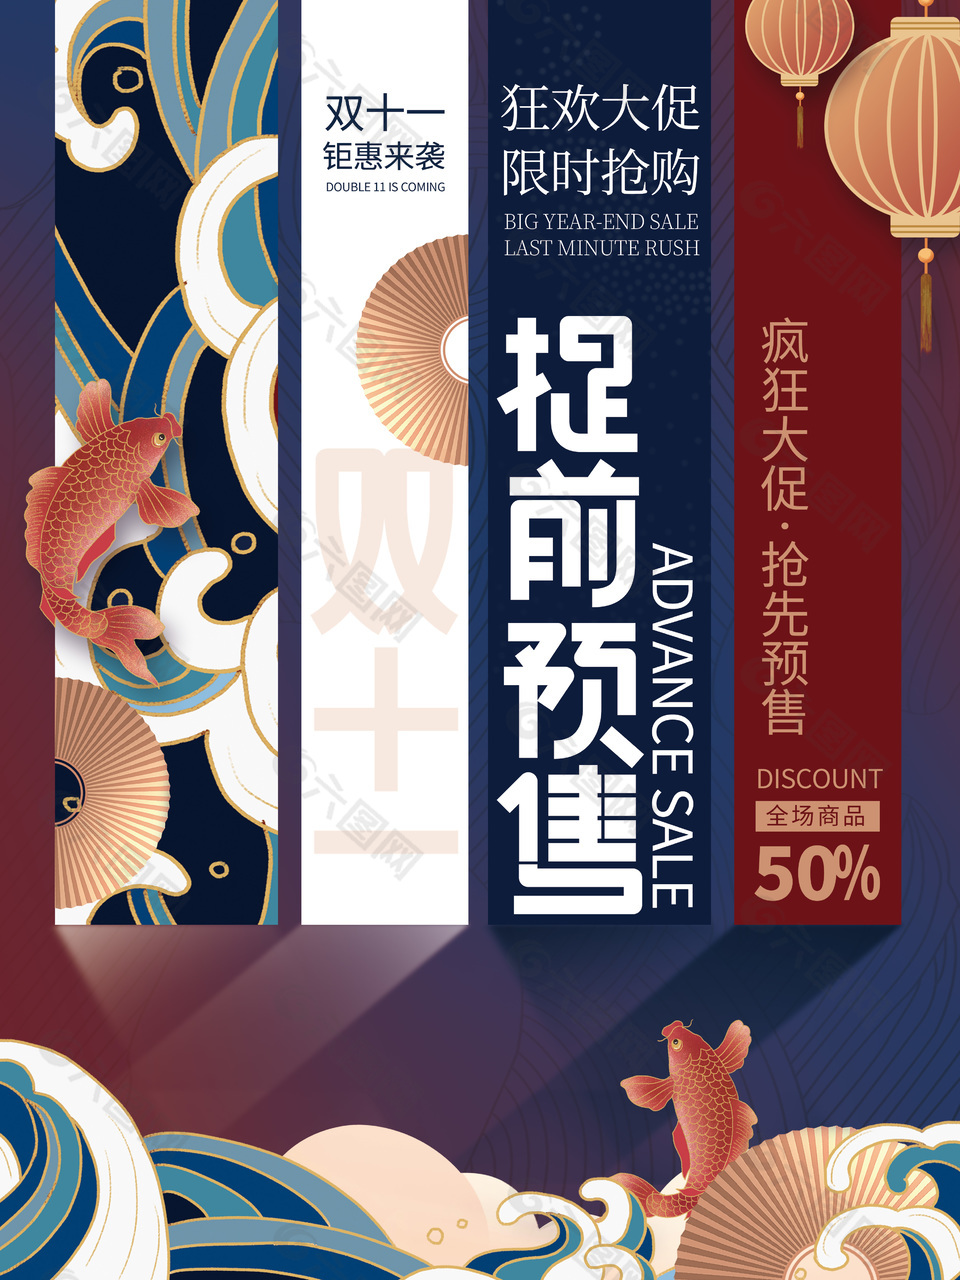 中国风双十一大促提前预售宣传海报设计